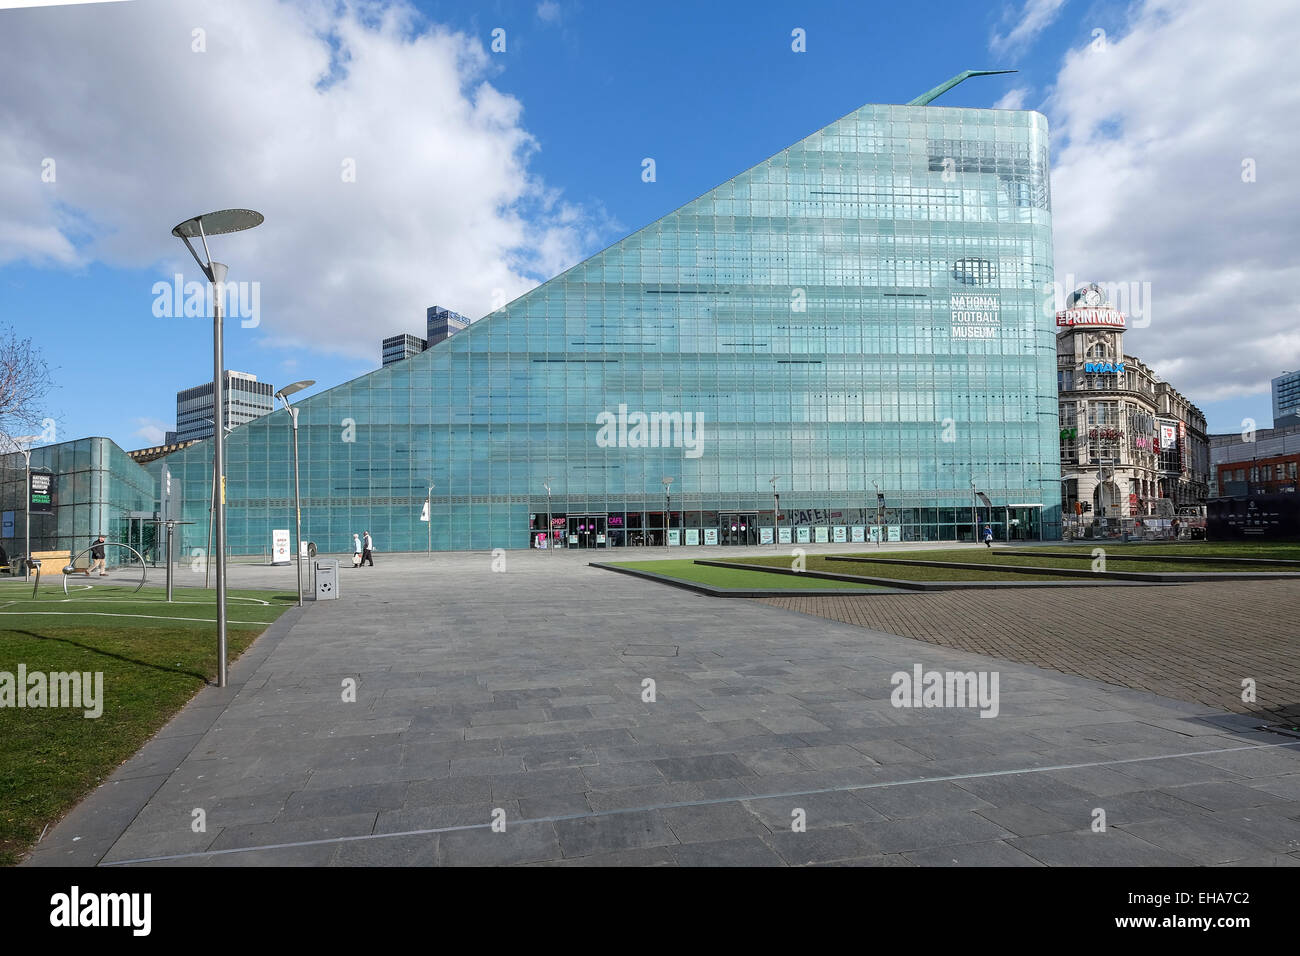 Manchester, Inglaterra: El Urbis edificio alberga el Museo Nacional del fútbol en Manchester. Foto de stock